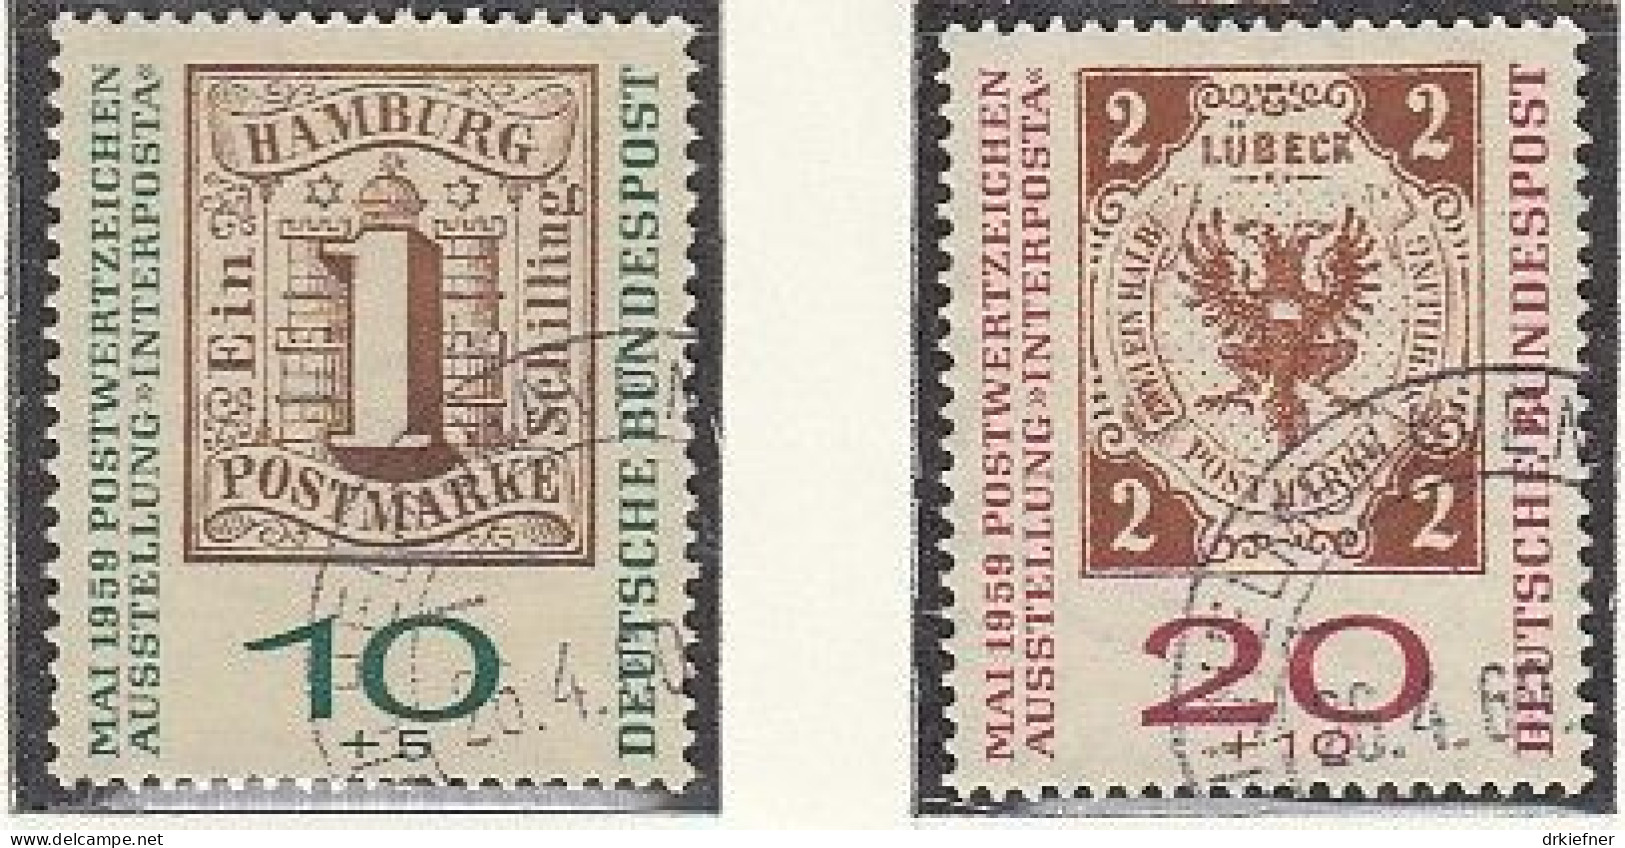 BRD  310-311 A, Gestempelt, INTERPOSTA, 1959 - Oblitérés